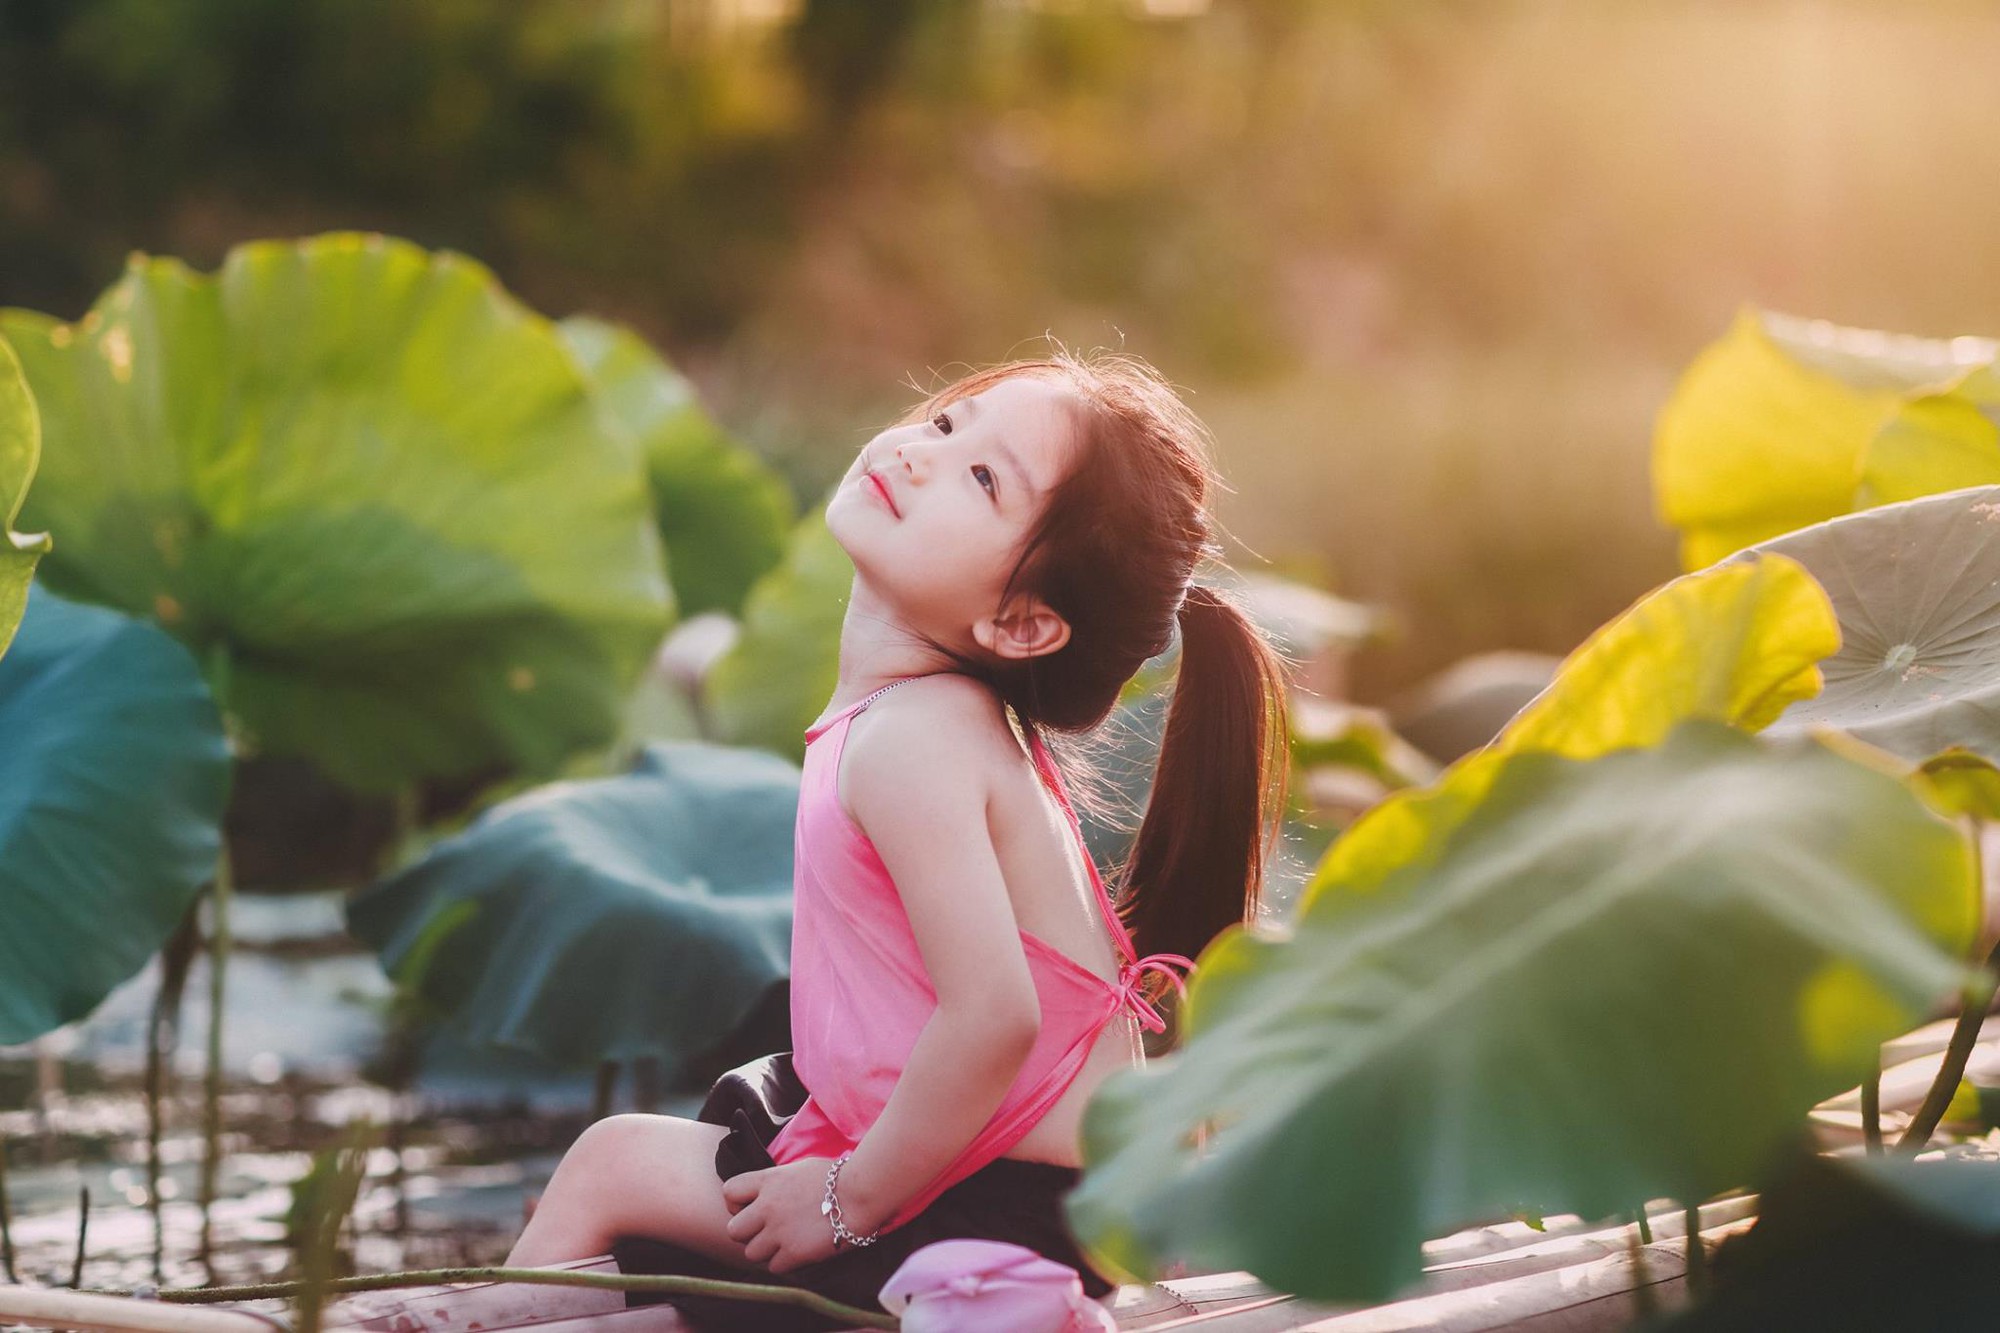 Hoa sen cho bé: Một chiếc hoa sen nhỏ xinh sẽ làm bé yêu của bạn cảm thấy đầy ấn tượng và yêu cuộc sống hơn. Hãy cùng chiêm ngưỡng hình ảnh hoa sen cho bé trong bộ sưu tập của chúng tôi.